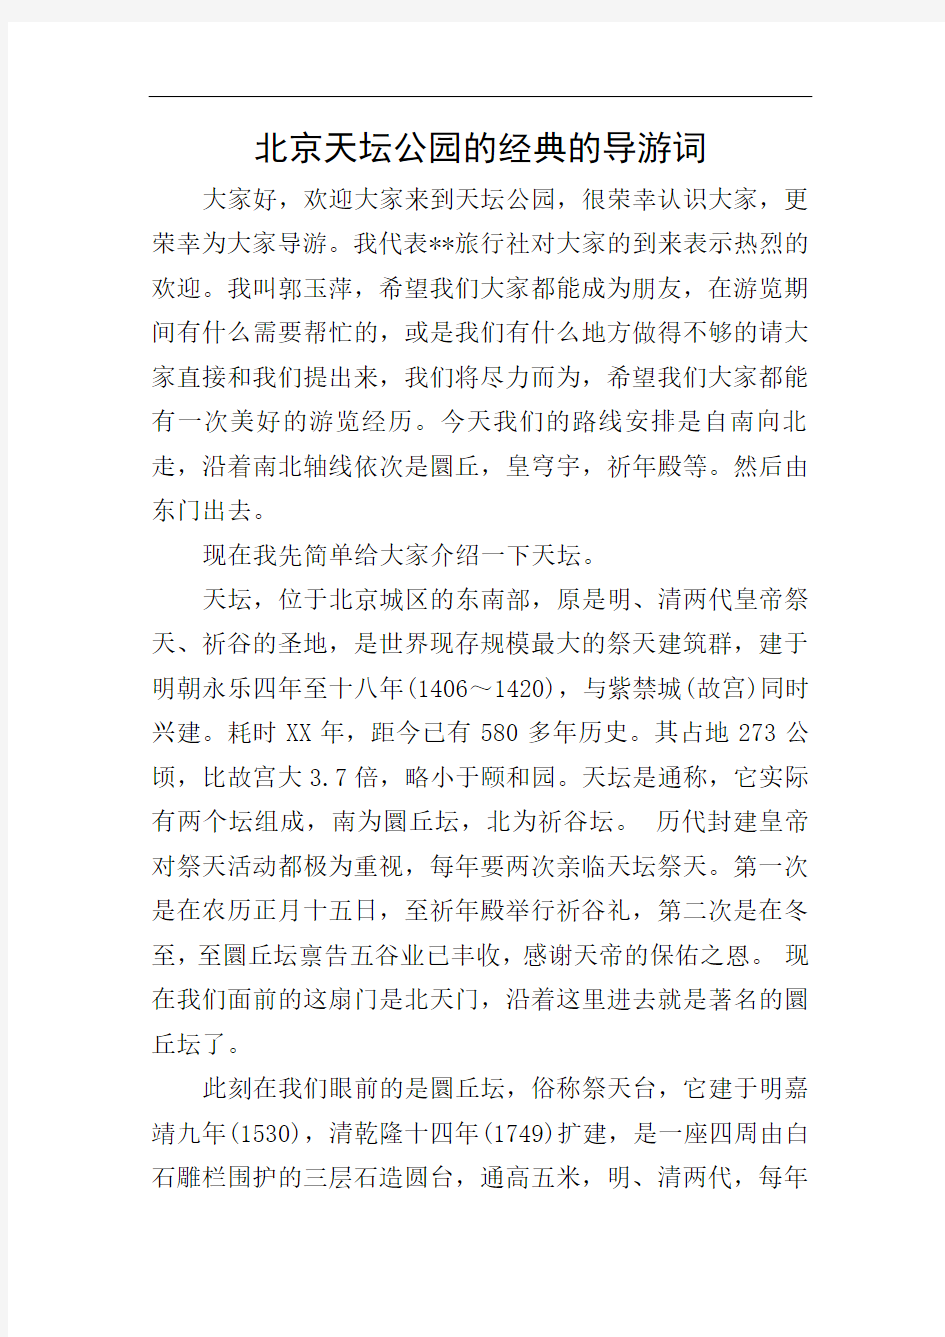 北京天坛公园的经典的导游词